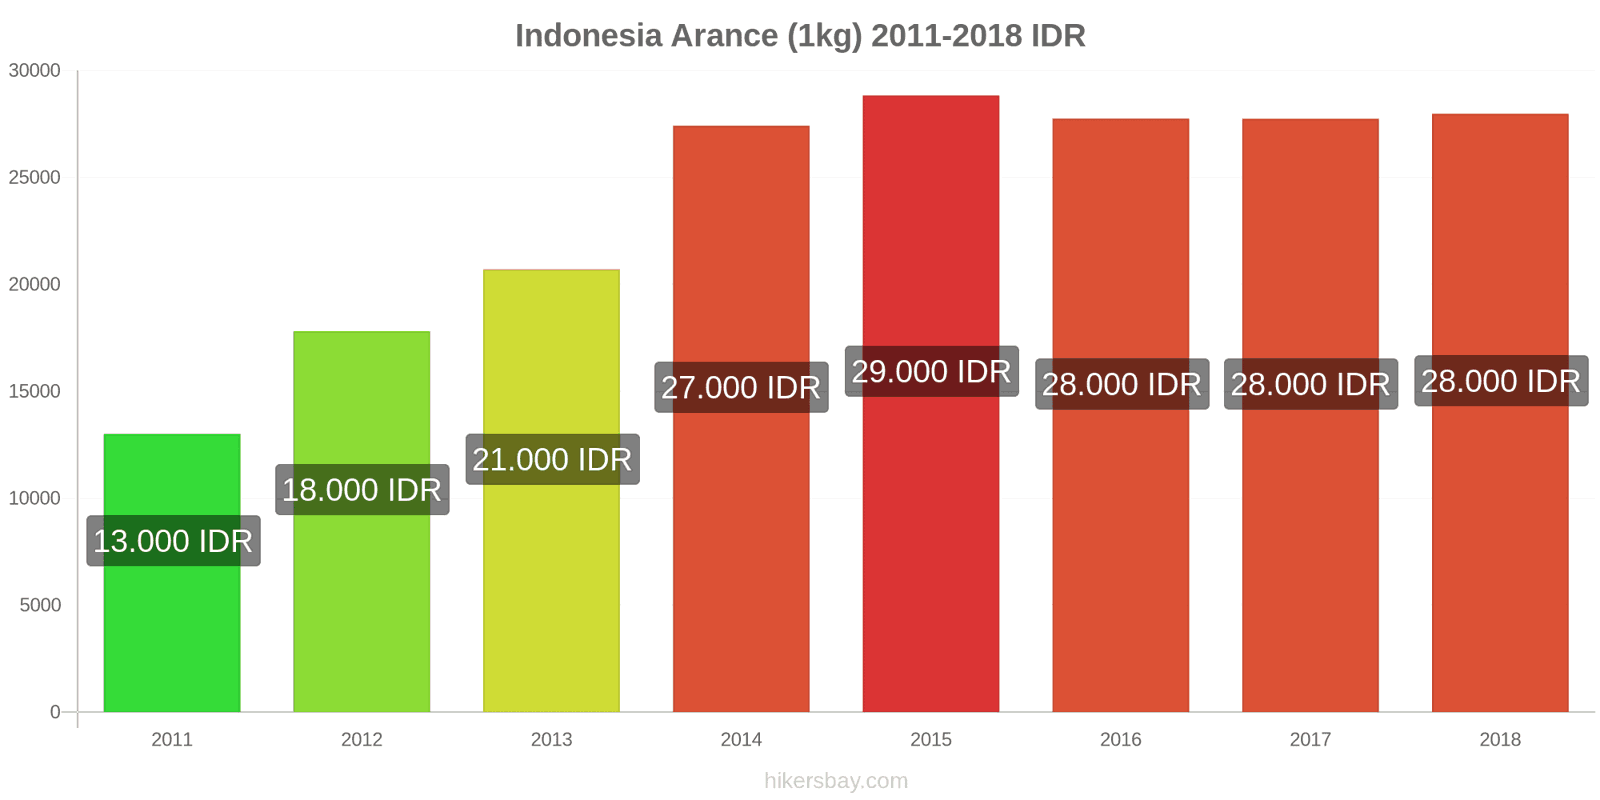 Indonesia cambi di prezzo Arance (1kg) hikersbay.com